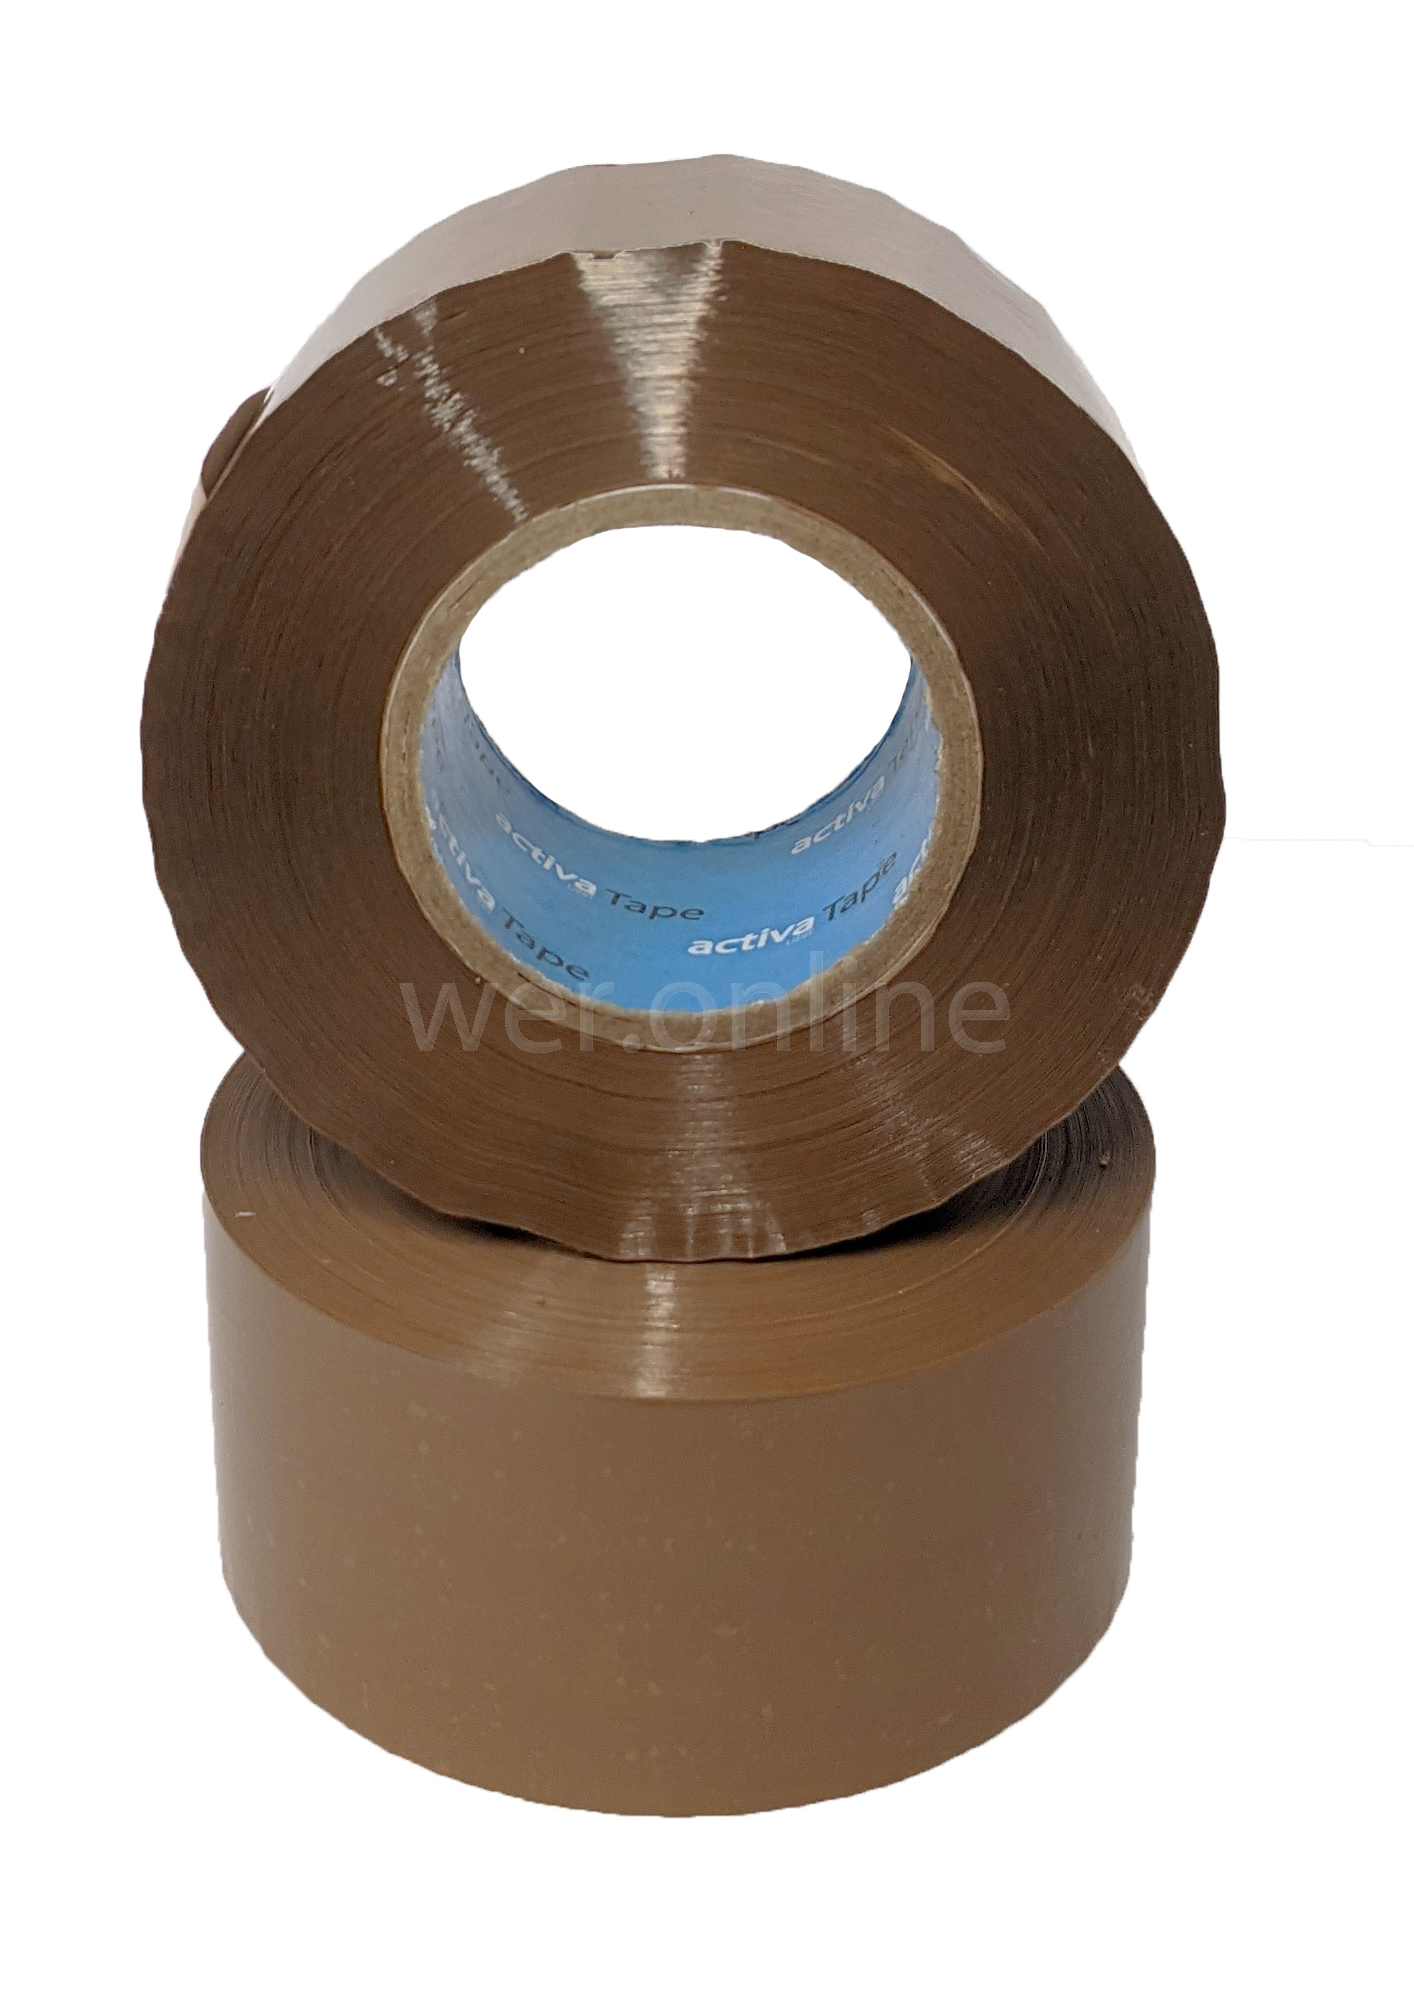 Buff Brown Packaging Tape 48mm x 66 meters Choose Qty